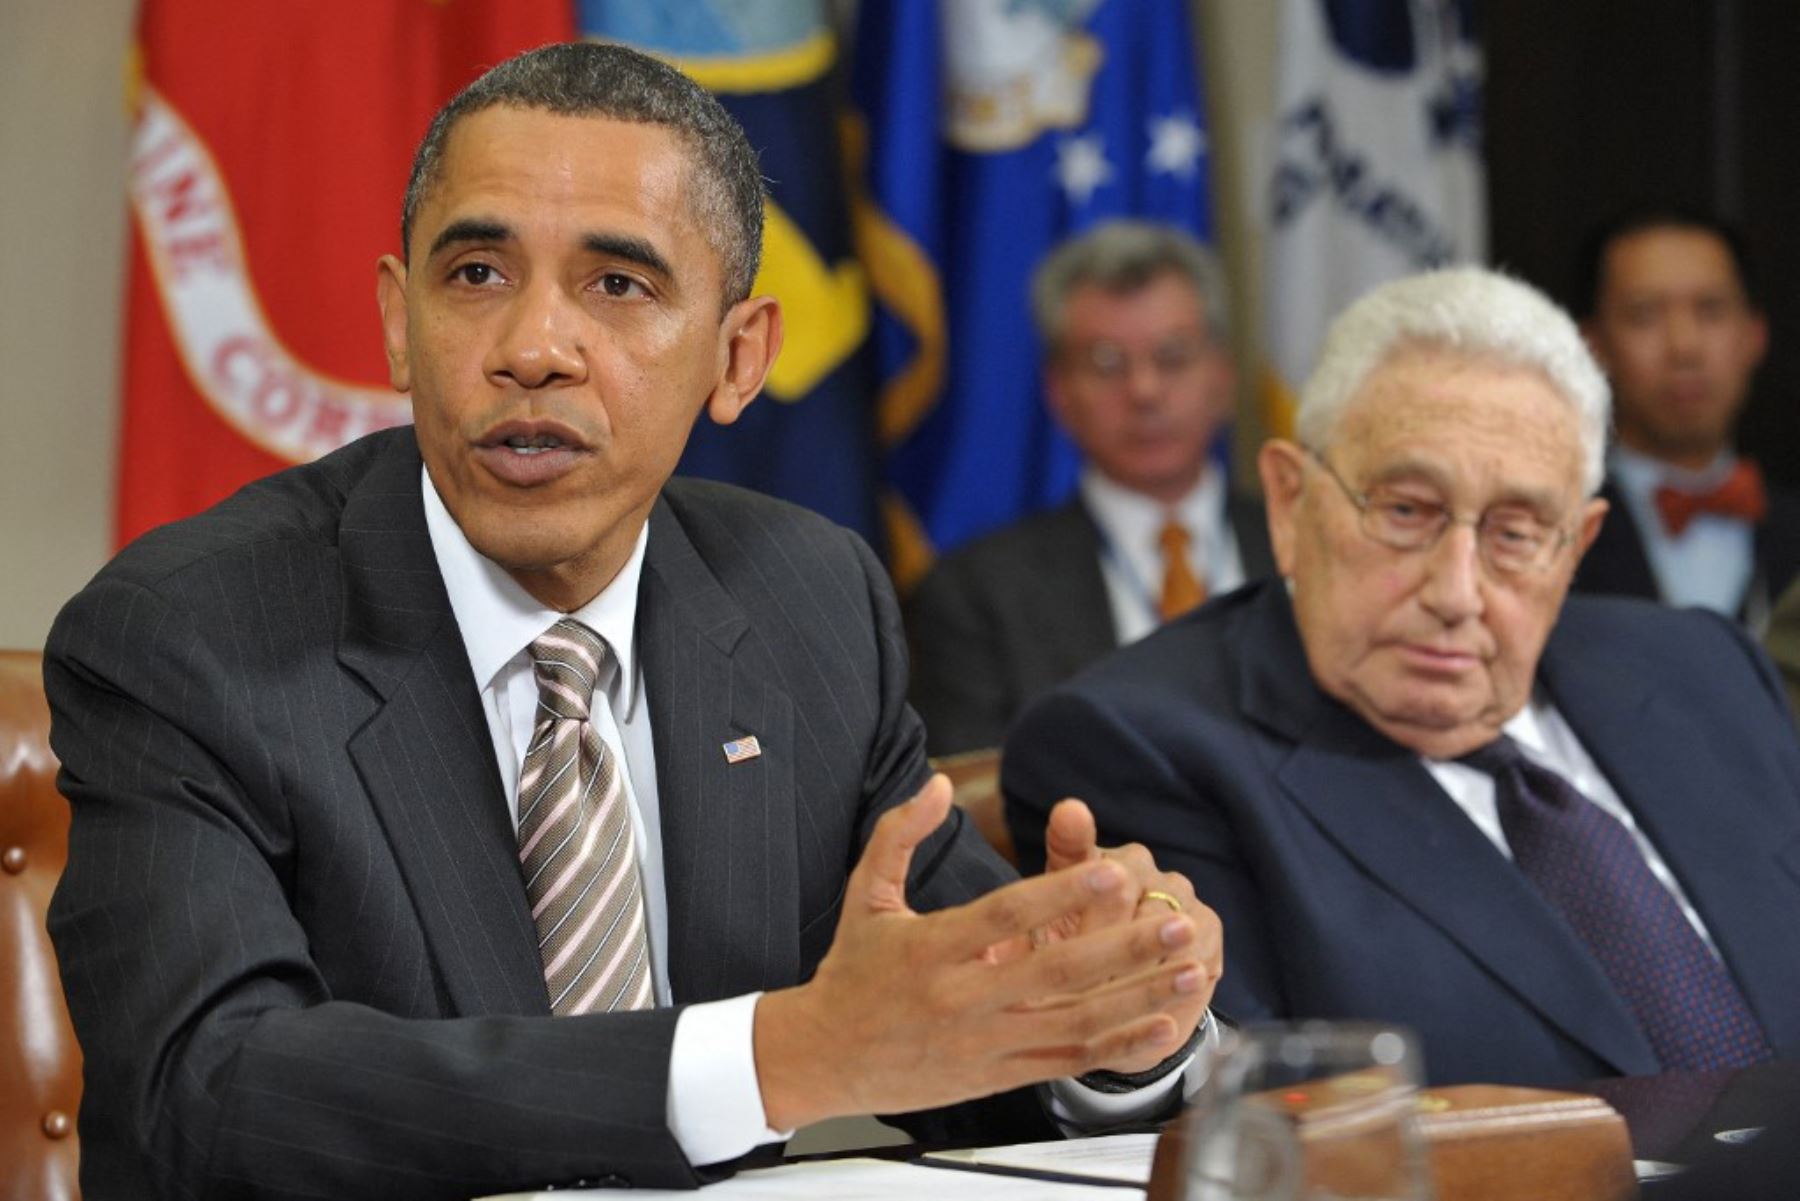 18 de noviembre de 2010. El presidente estadounidense, Barack Obama, habla durante una reunión sobre el nuevo Tratado START mientras el exsecretario de Estado Henry Kissinger mira en la Sala Roosevelt de la Casa Blanca en Washington, DC. Foto: AFP